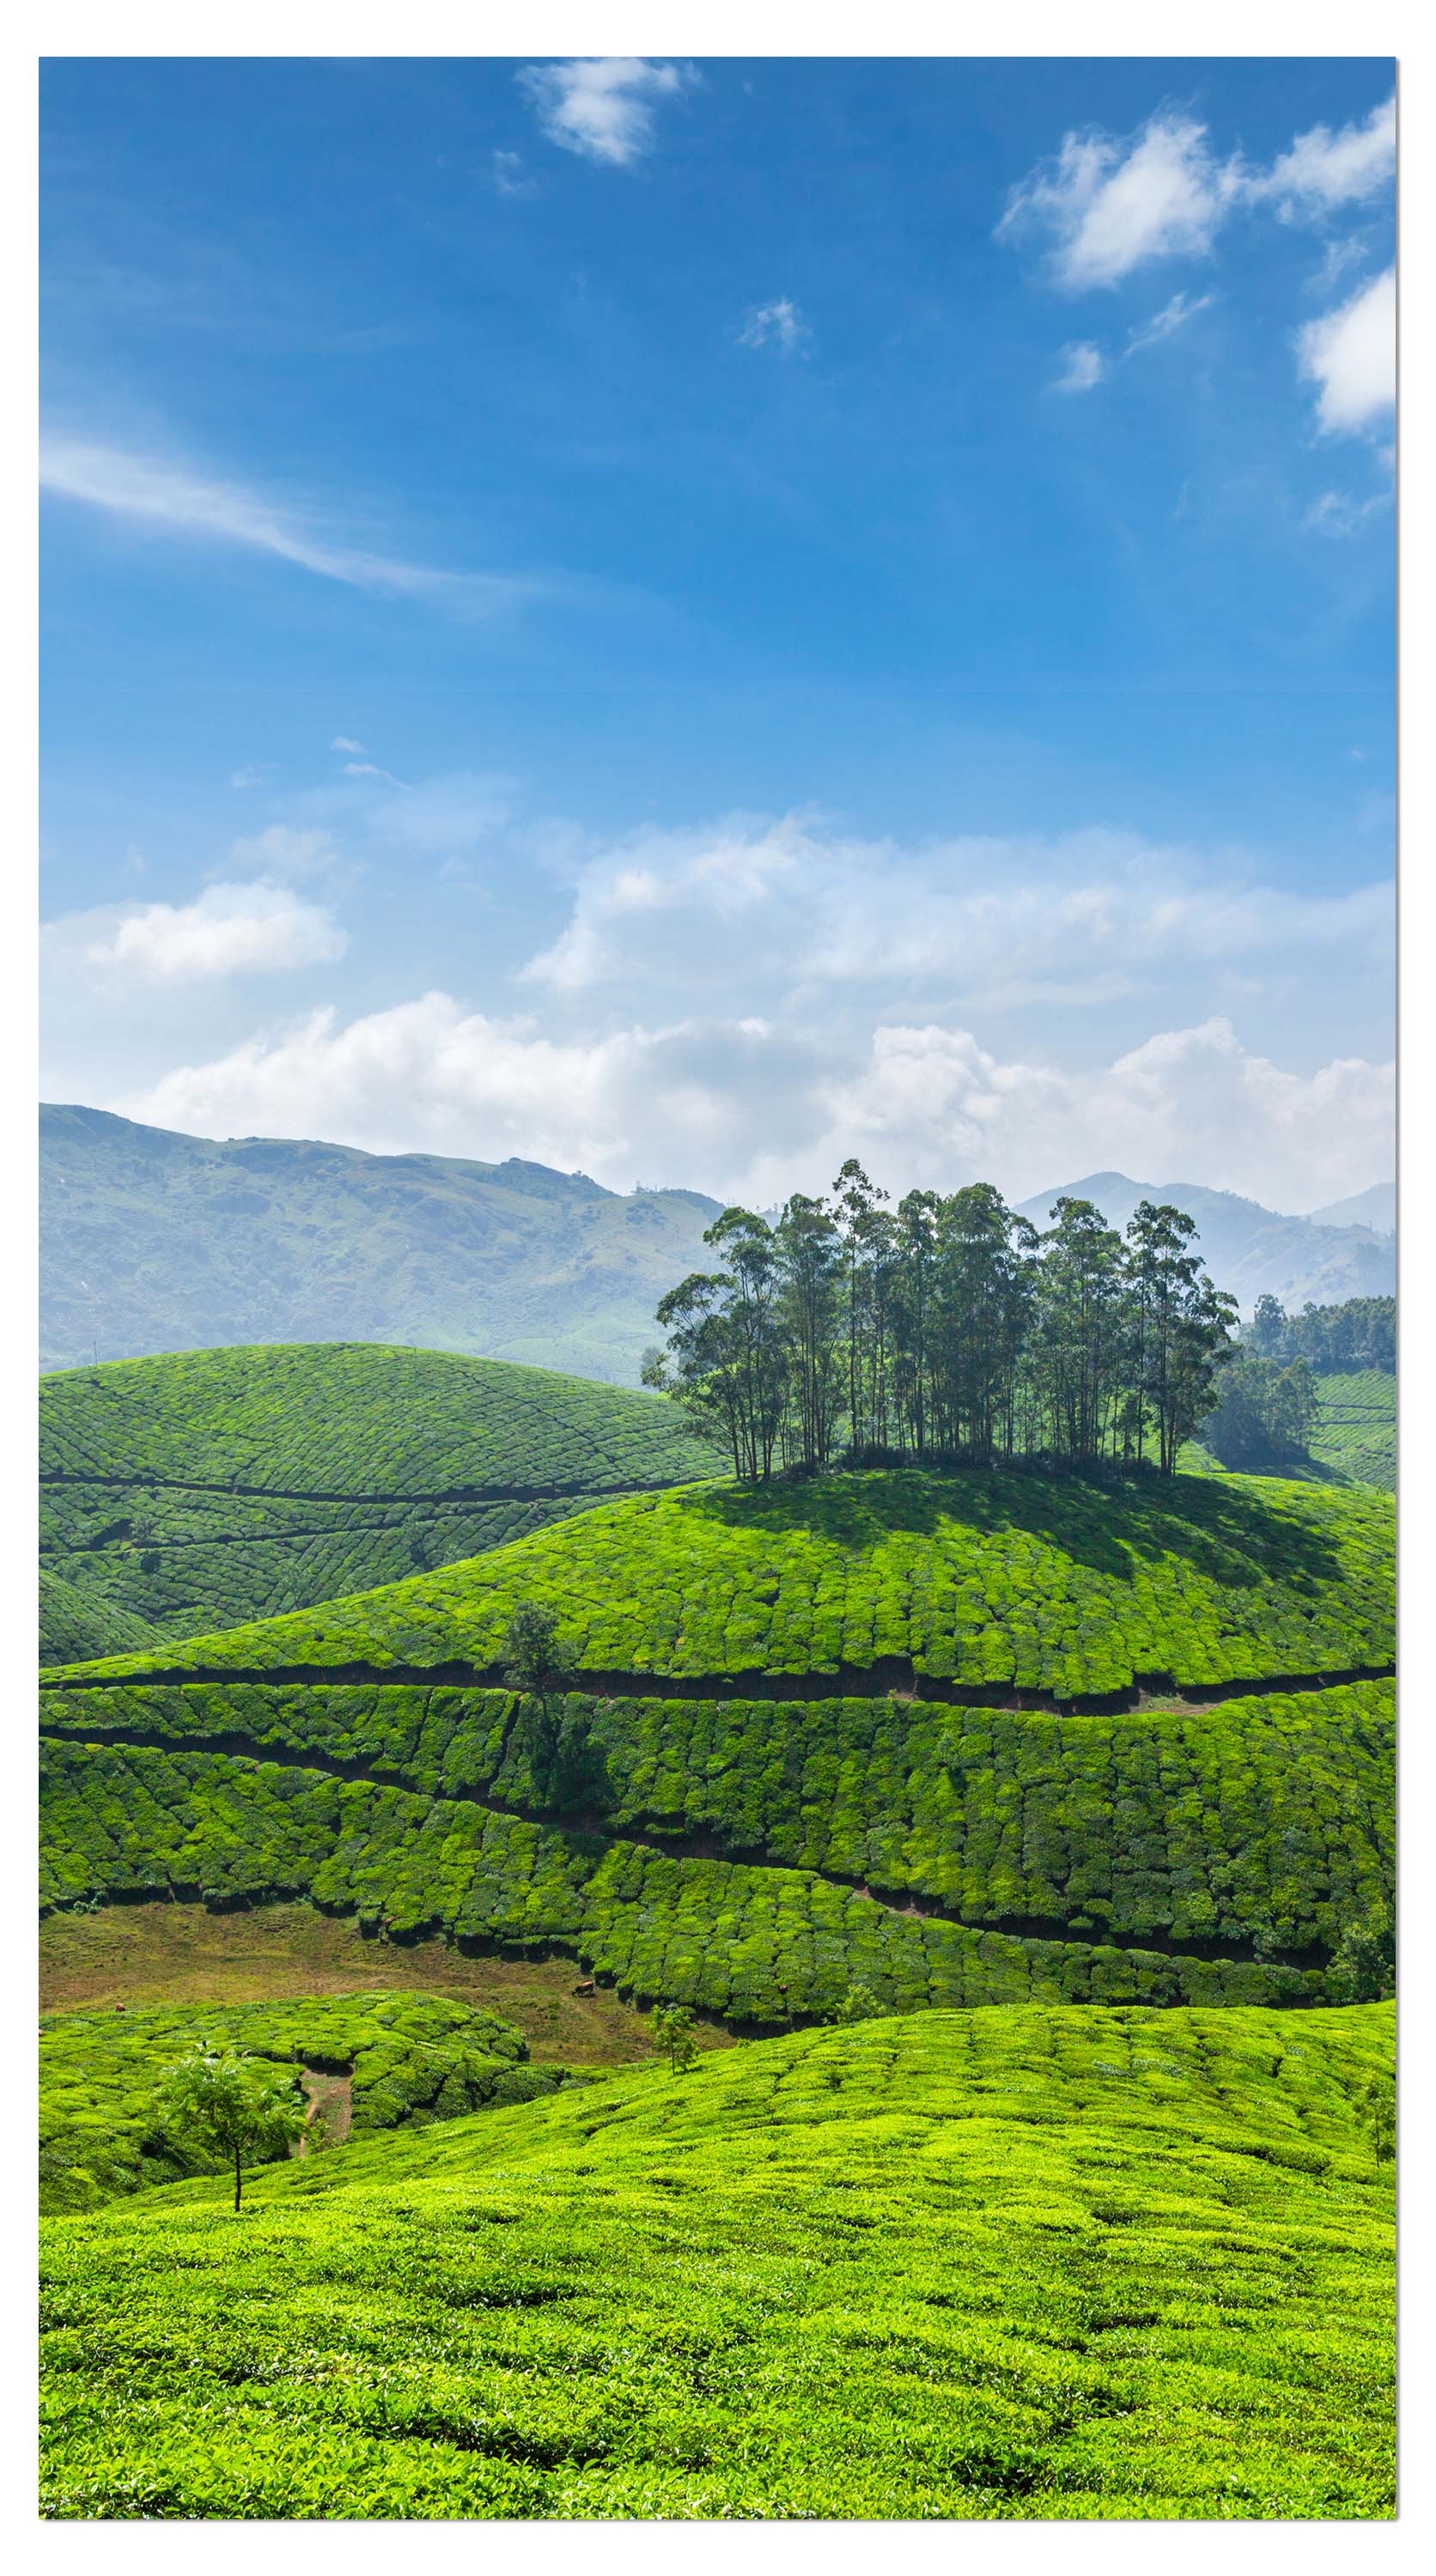 Garderobe Teeplantagen in Indien M0909 entdecken - Bild 4